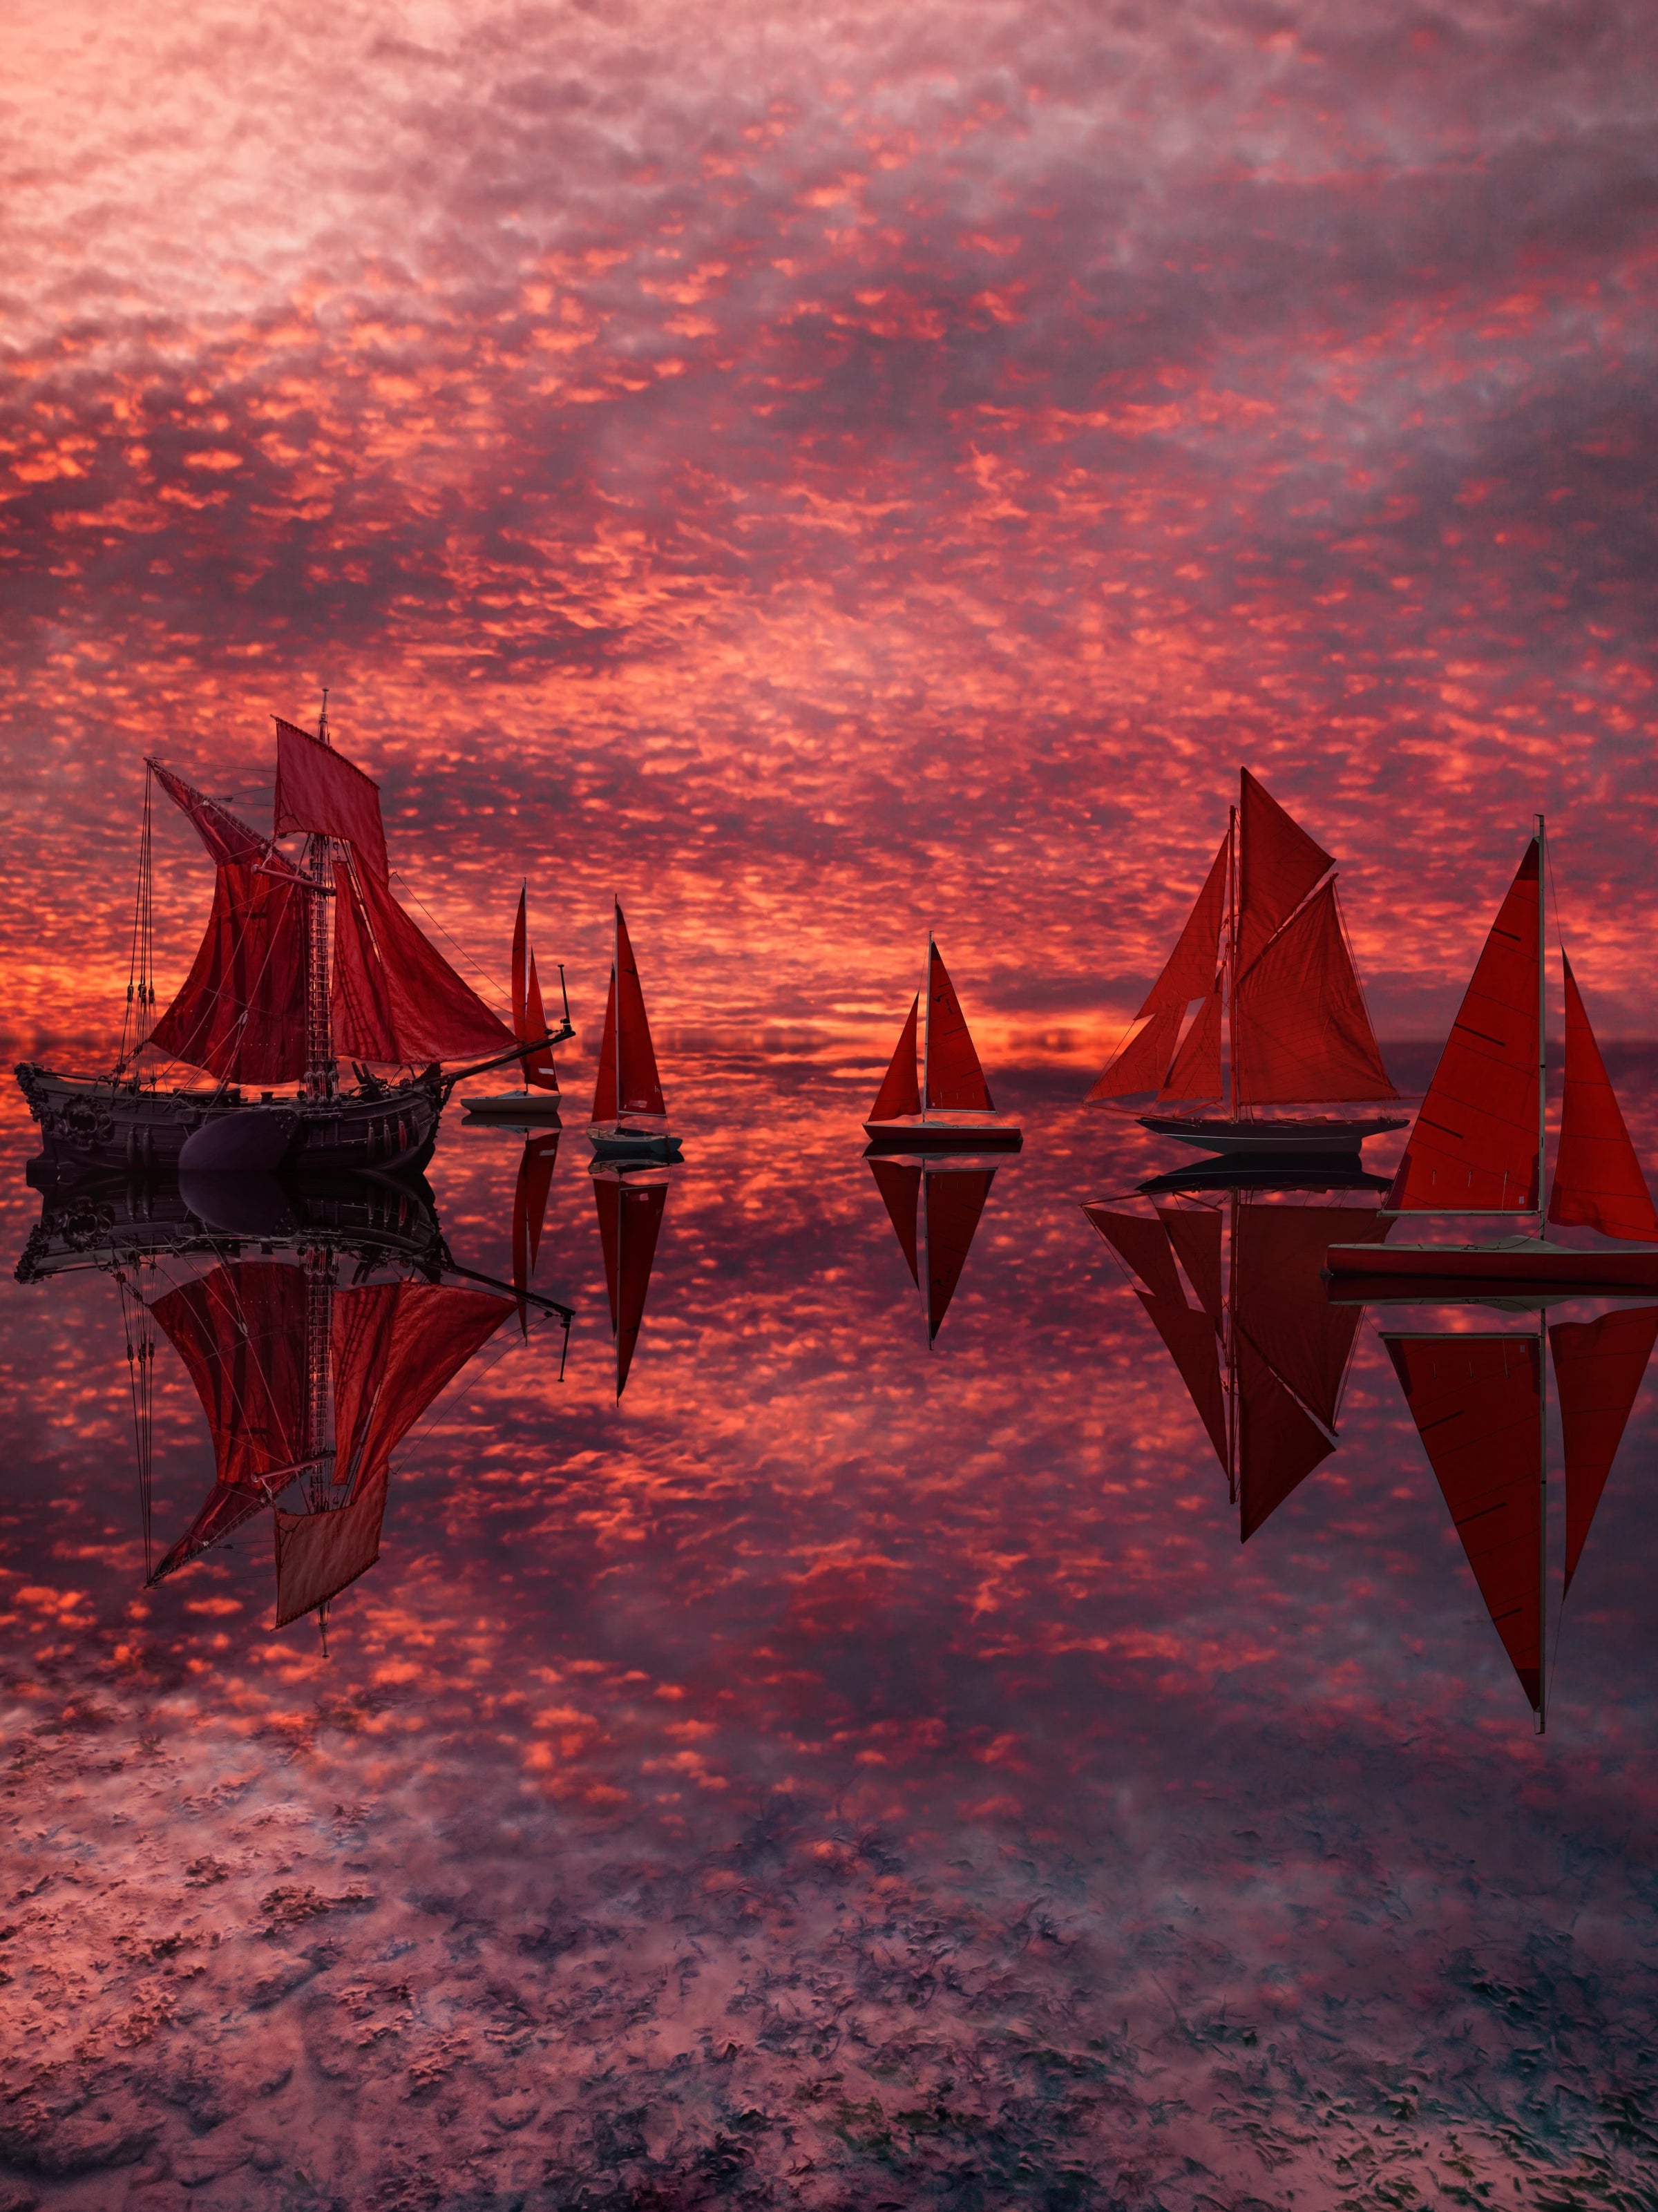 Tableau photo de superbes voiliers aux voiles rouge sur la mer et avec un couché de soleil